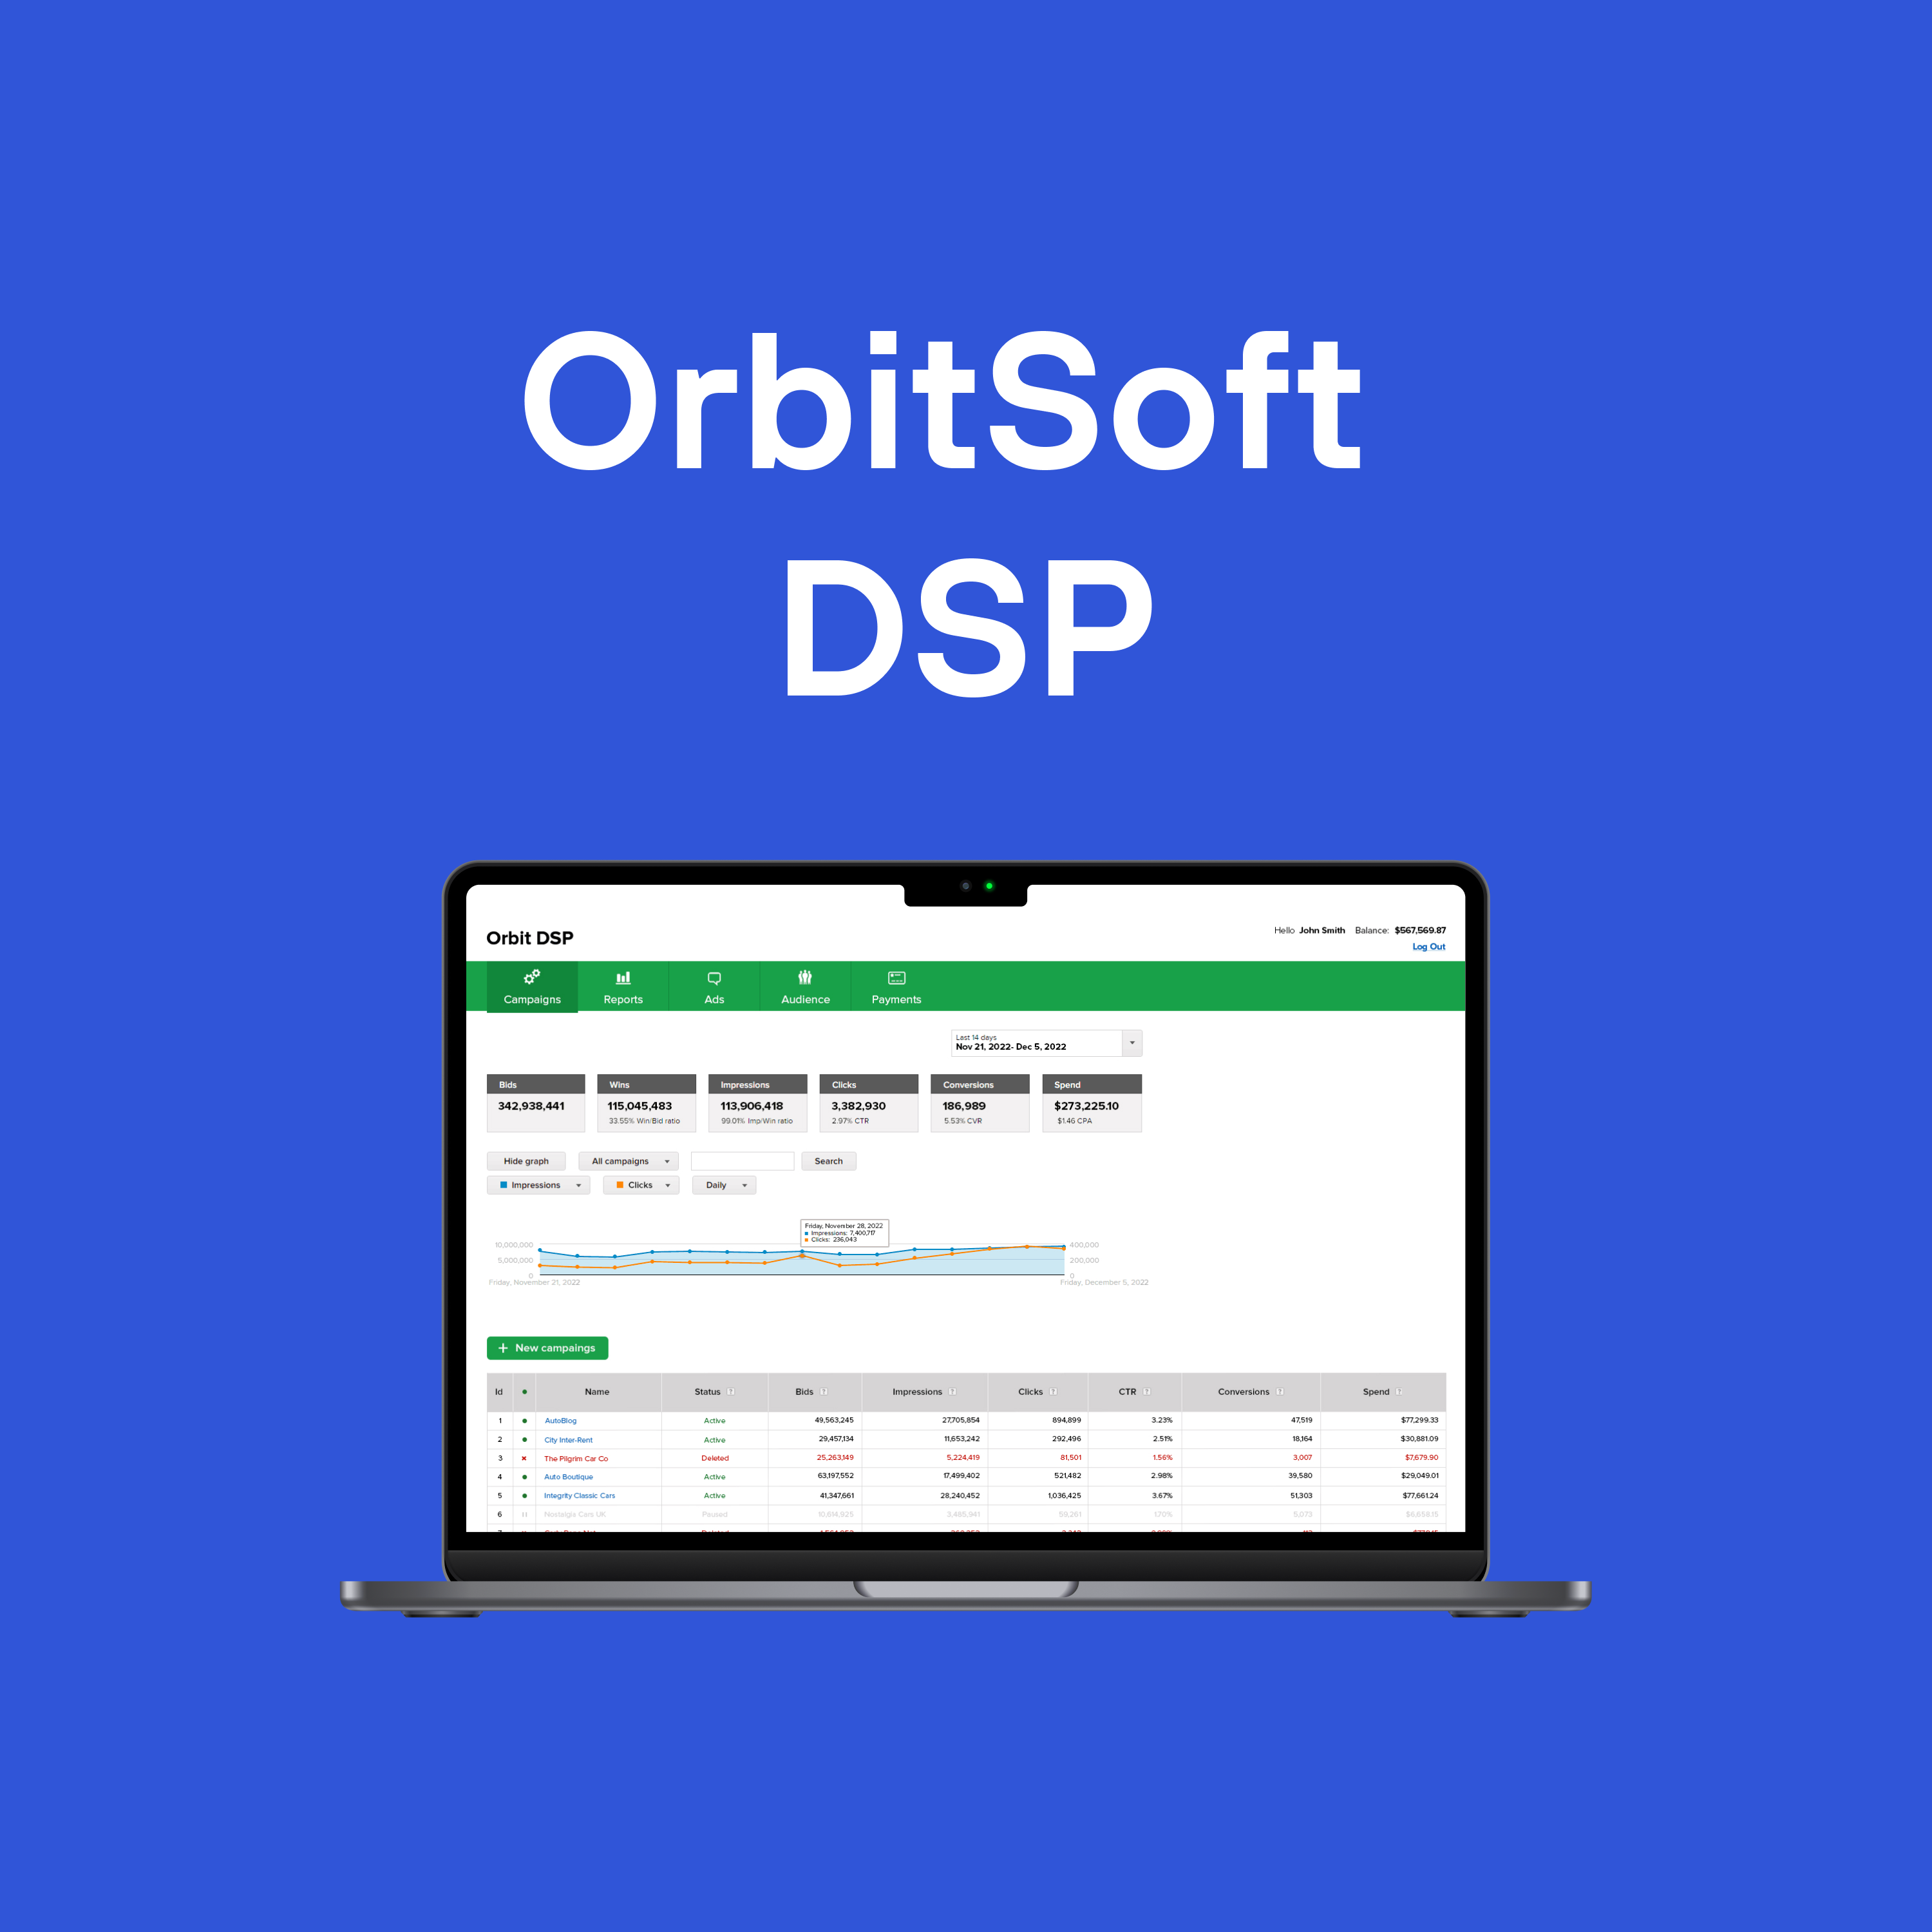 DSP — Demand Side Platform